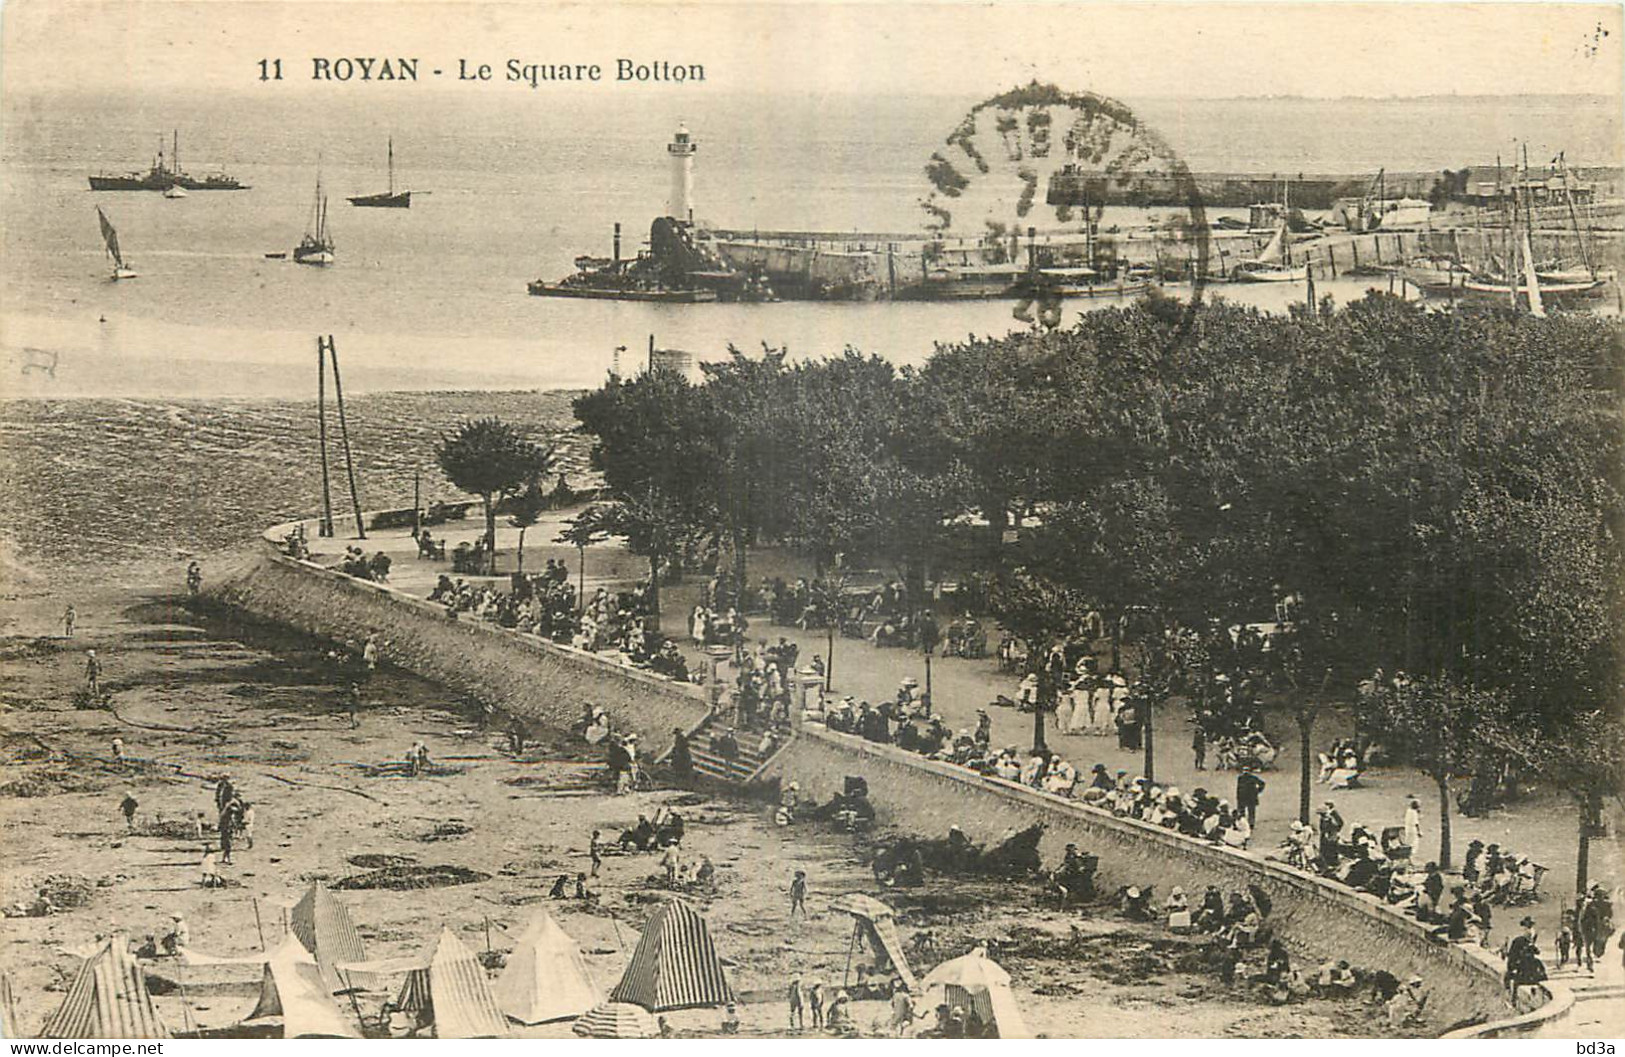 17 - ROYAN -LE SQUARE BOTTON - Edition Nouvelles Galeries Royan - 11 - Royan